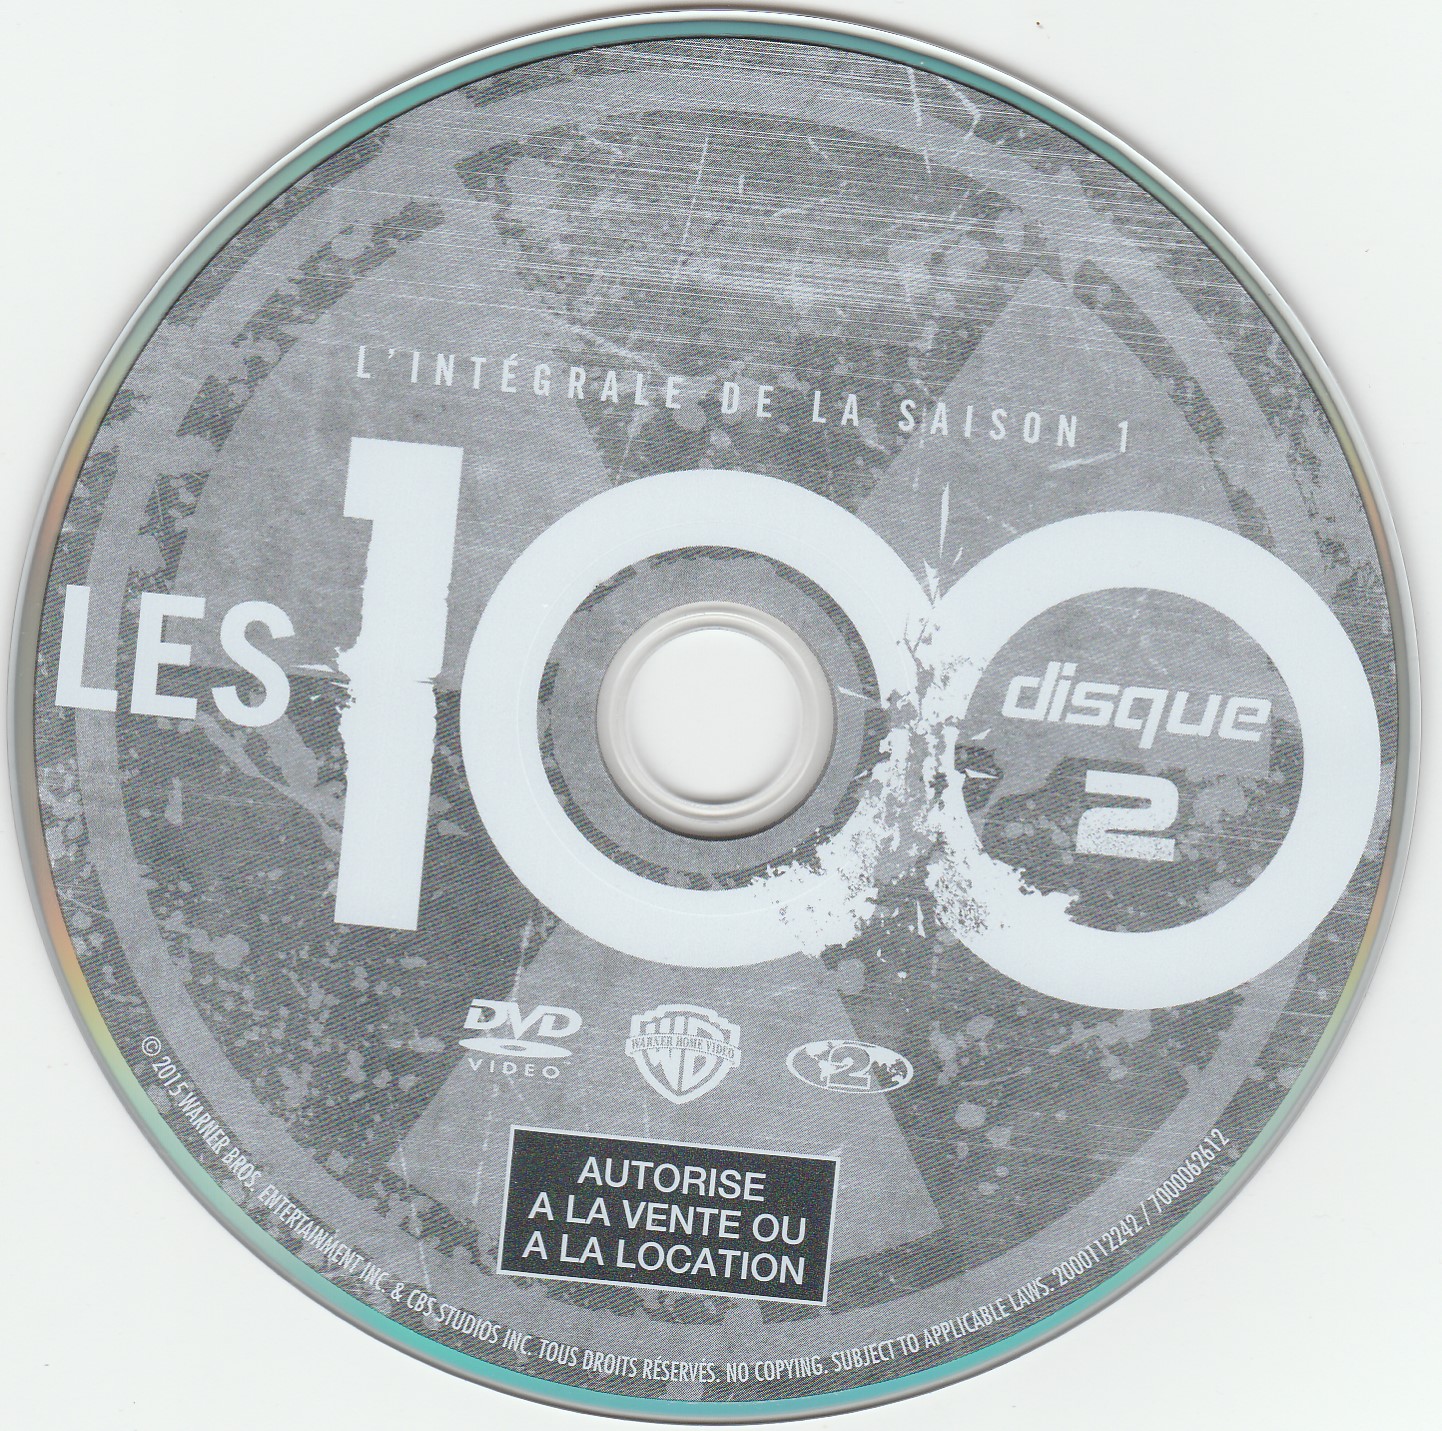 Les 100 Saison 1 DISC 2